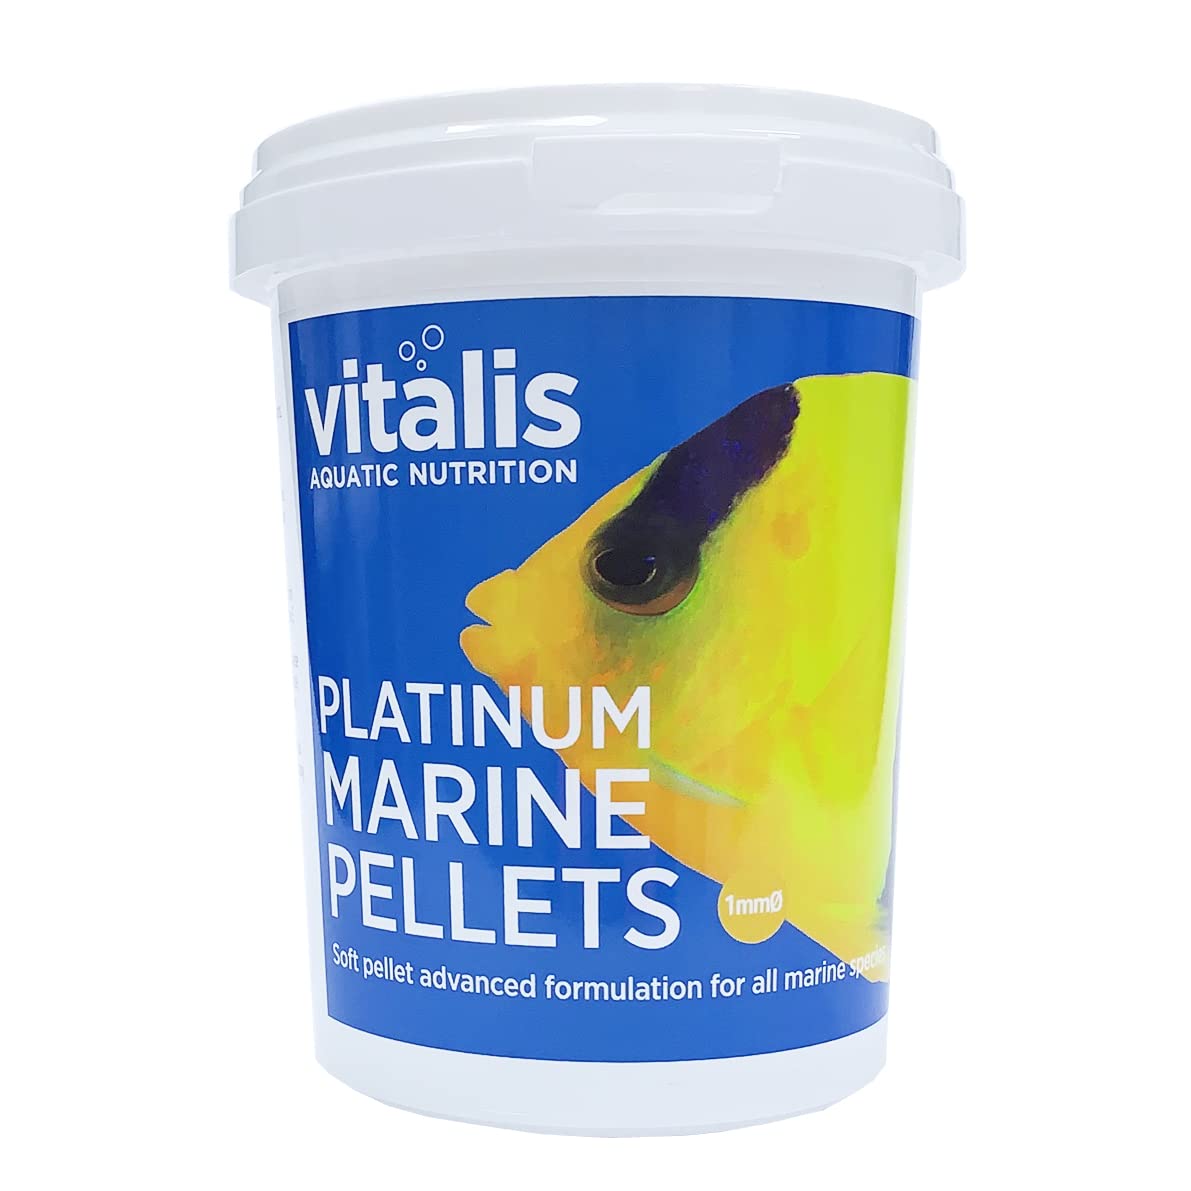 Vitalis Platinum Marine Pellets Fischfutter Aquarium (260g) Fischfutter Aquarium Pellets für Marine Fischarten - hochverdaulich und ausgewogen - Vitamine und Mineralien (260g)